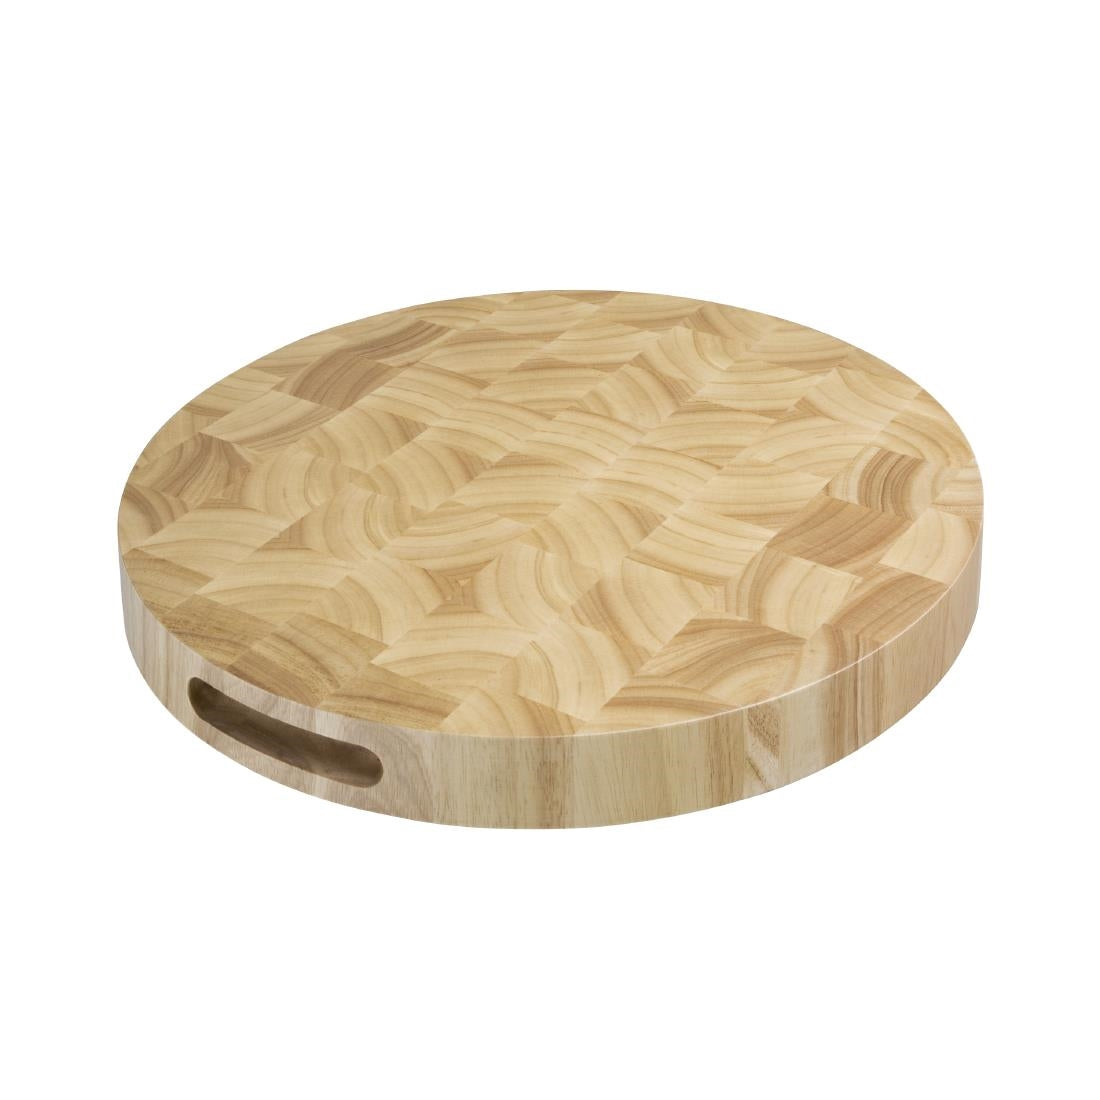 C488 Vogue Round Wooden Chopping Board